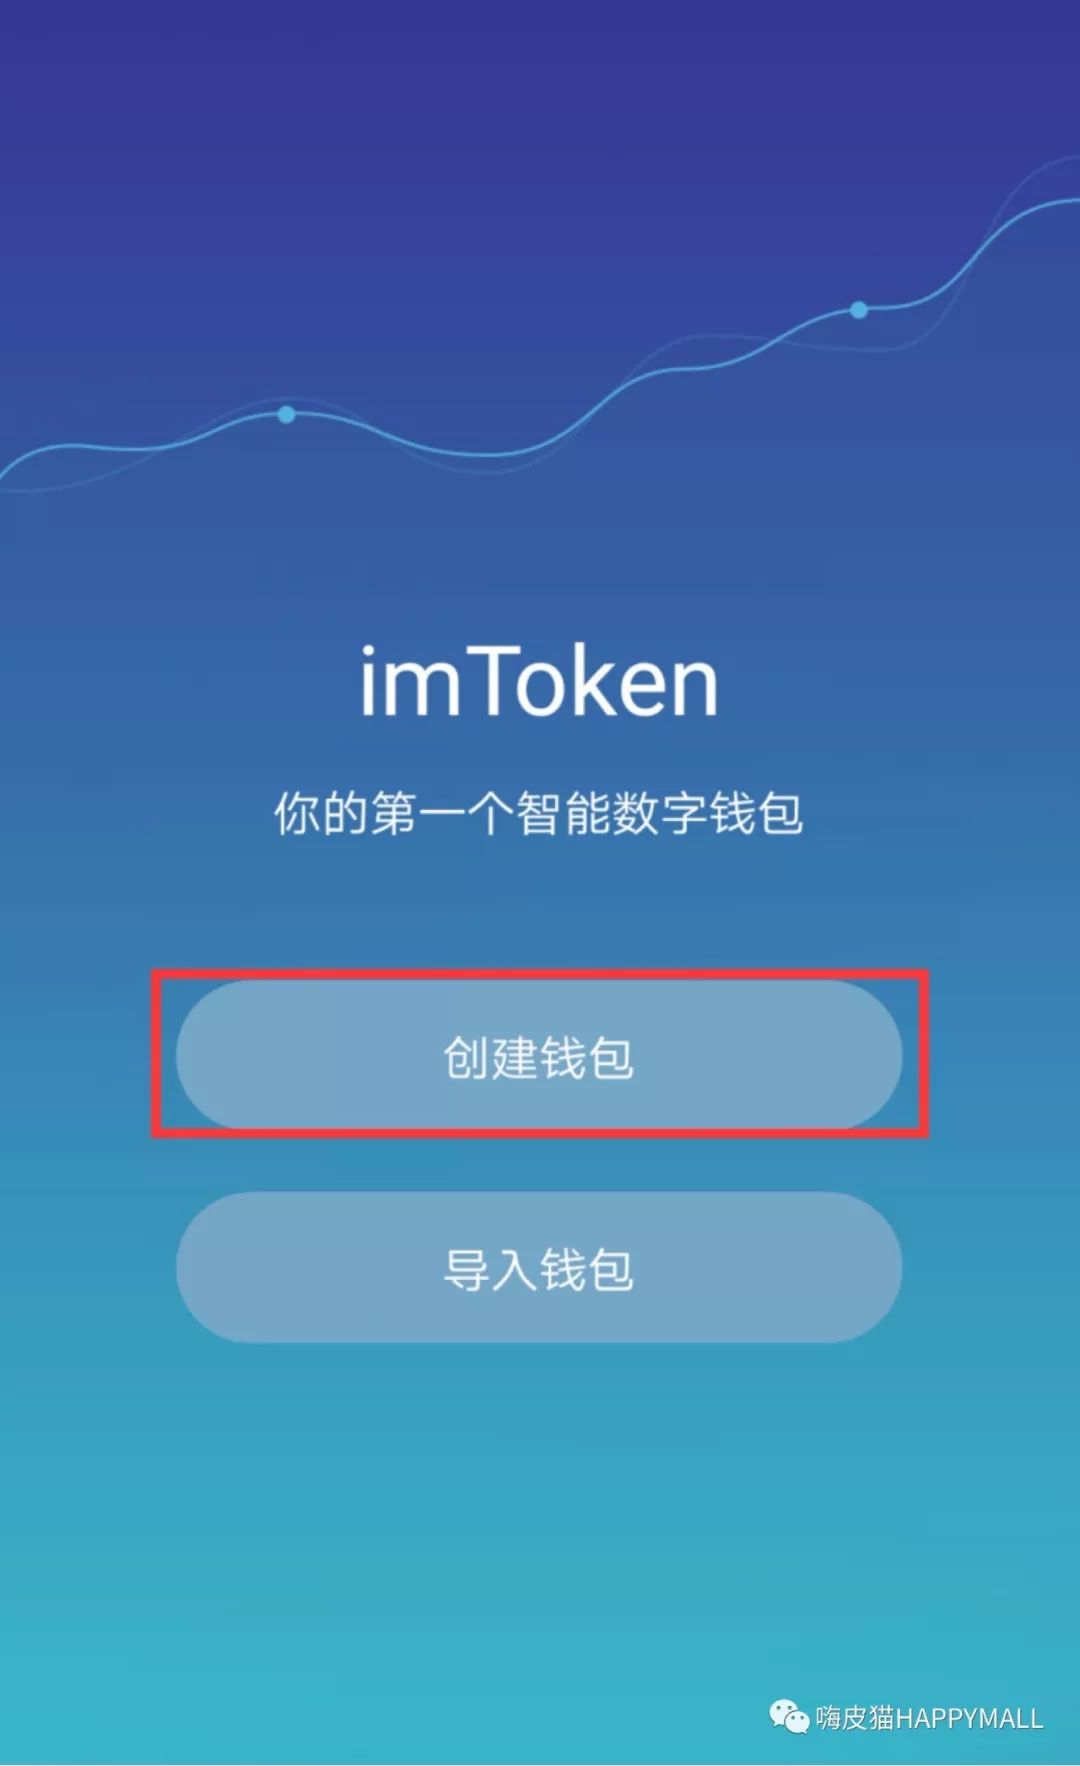 itoken钱包app下载网址-i am token钱包下载地址